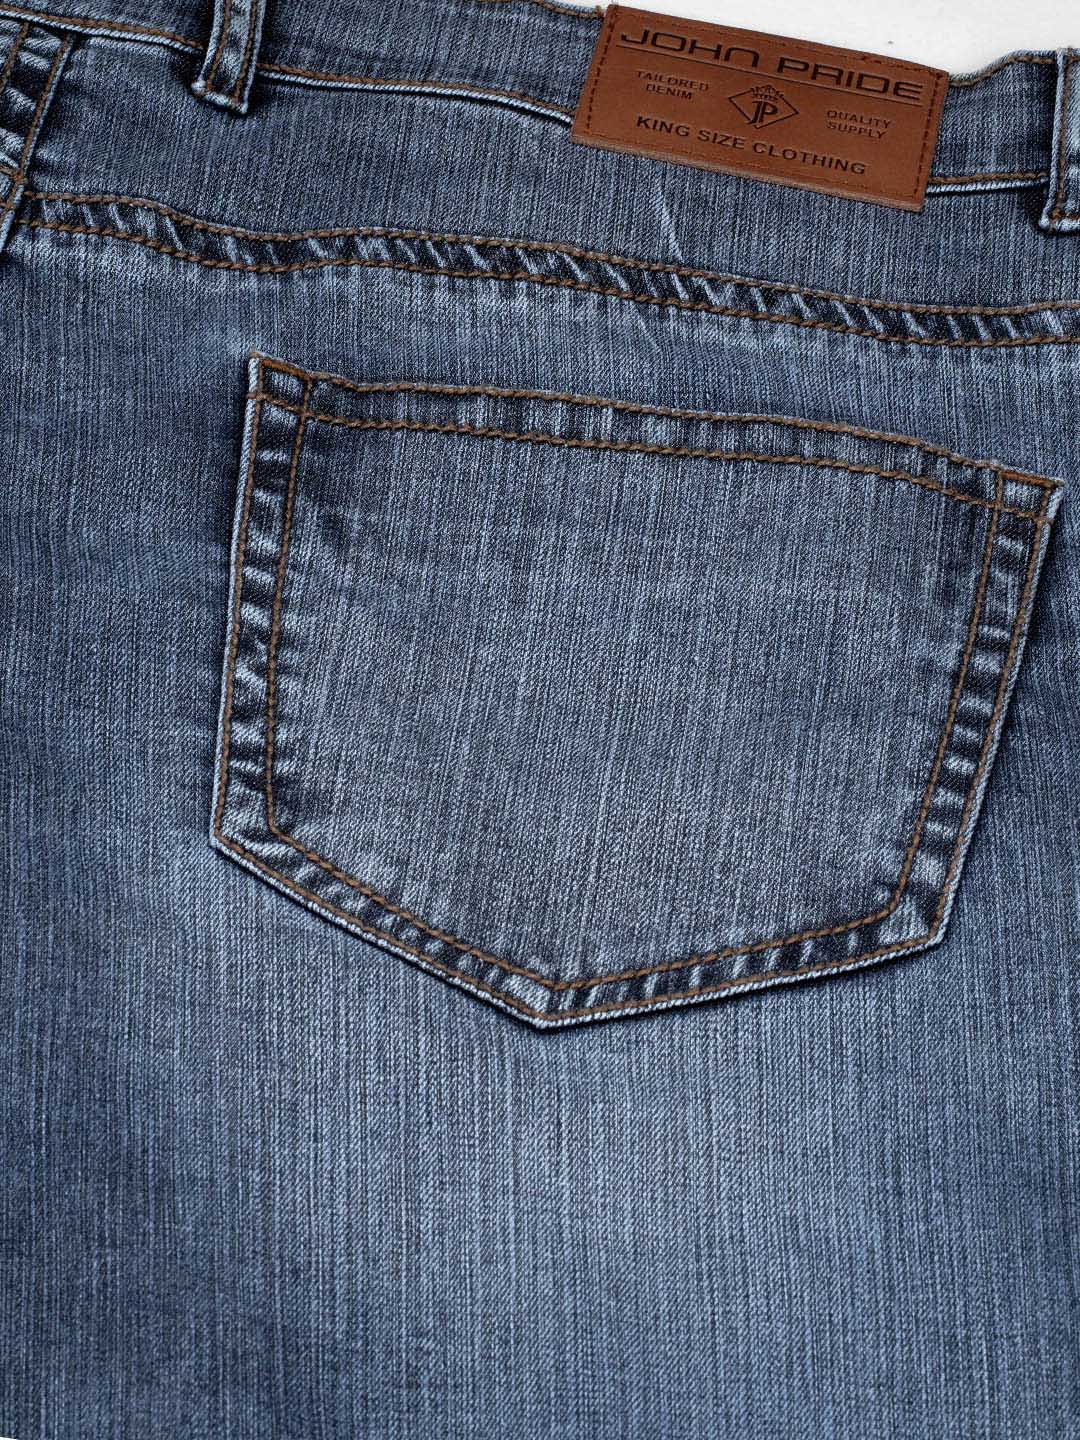 bottomwear/jeans/JPJ2555/jpj2555-5.jpg